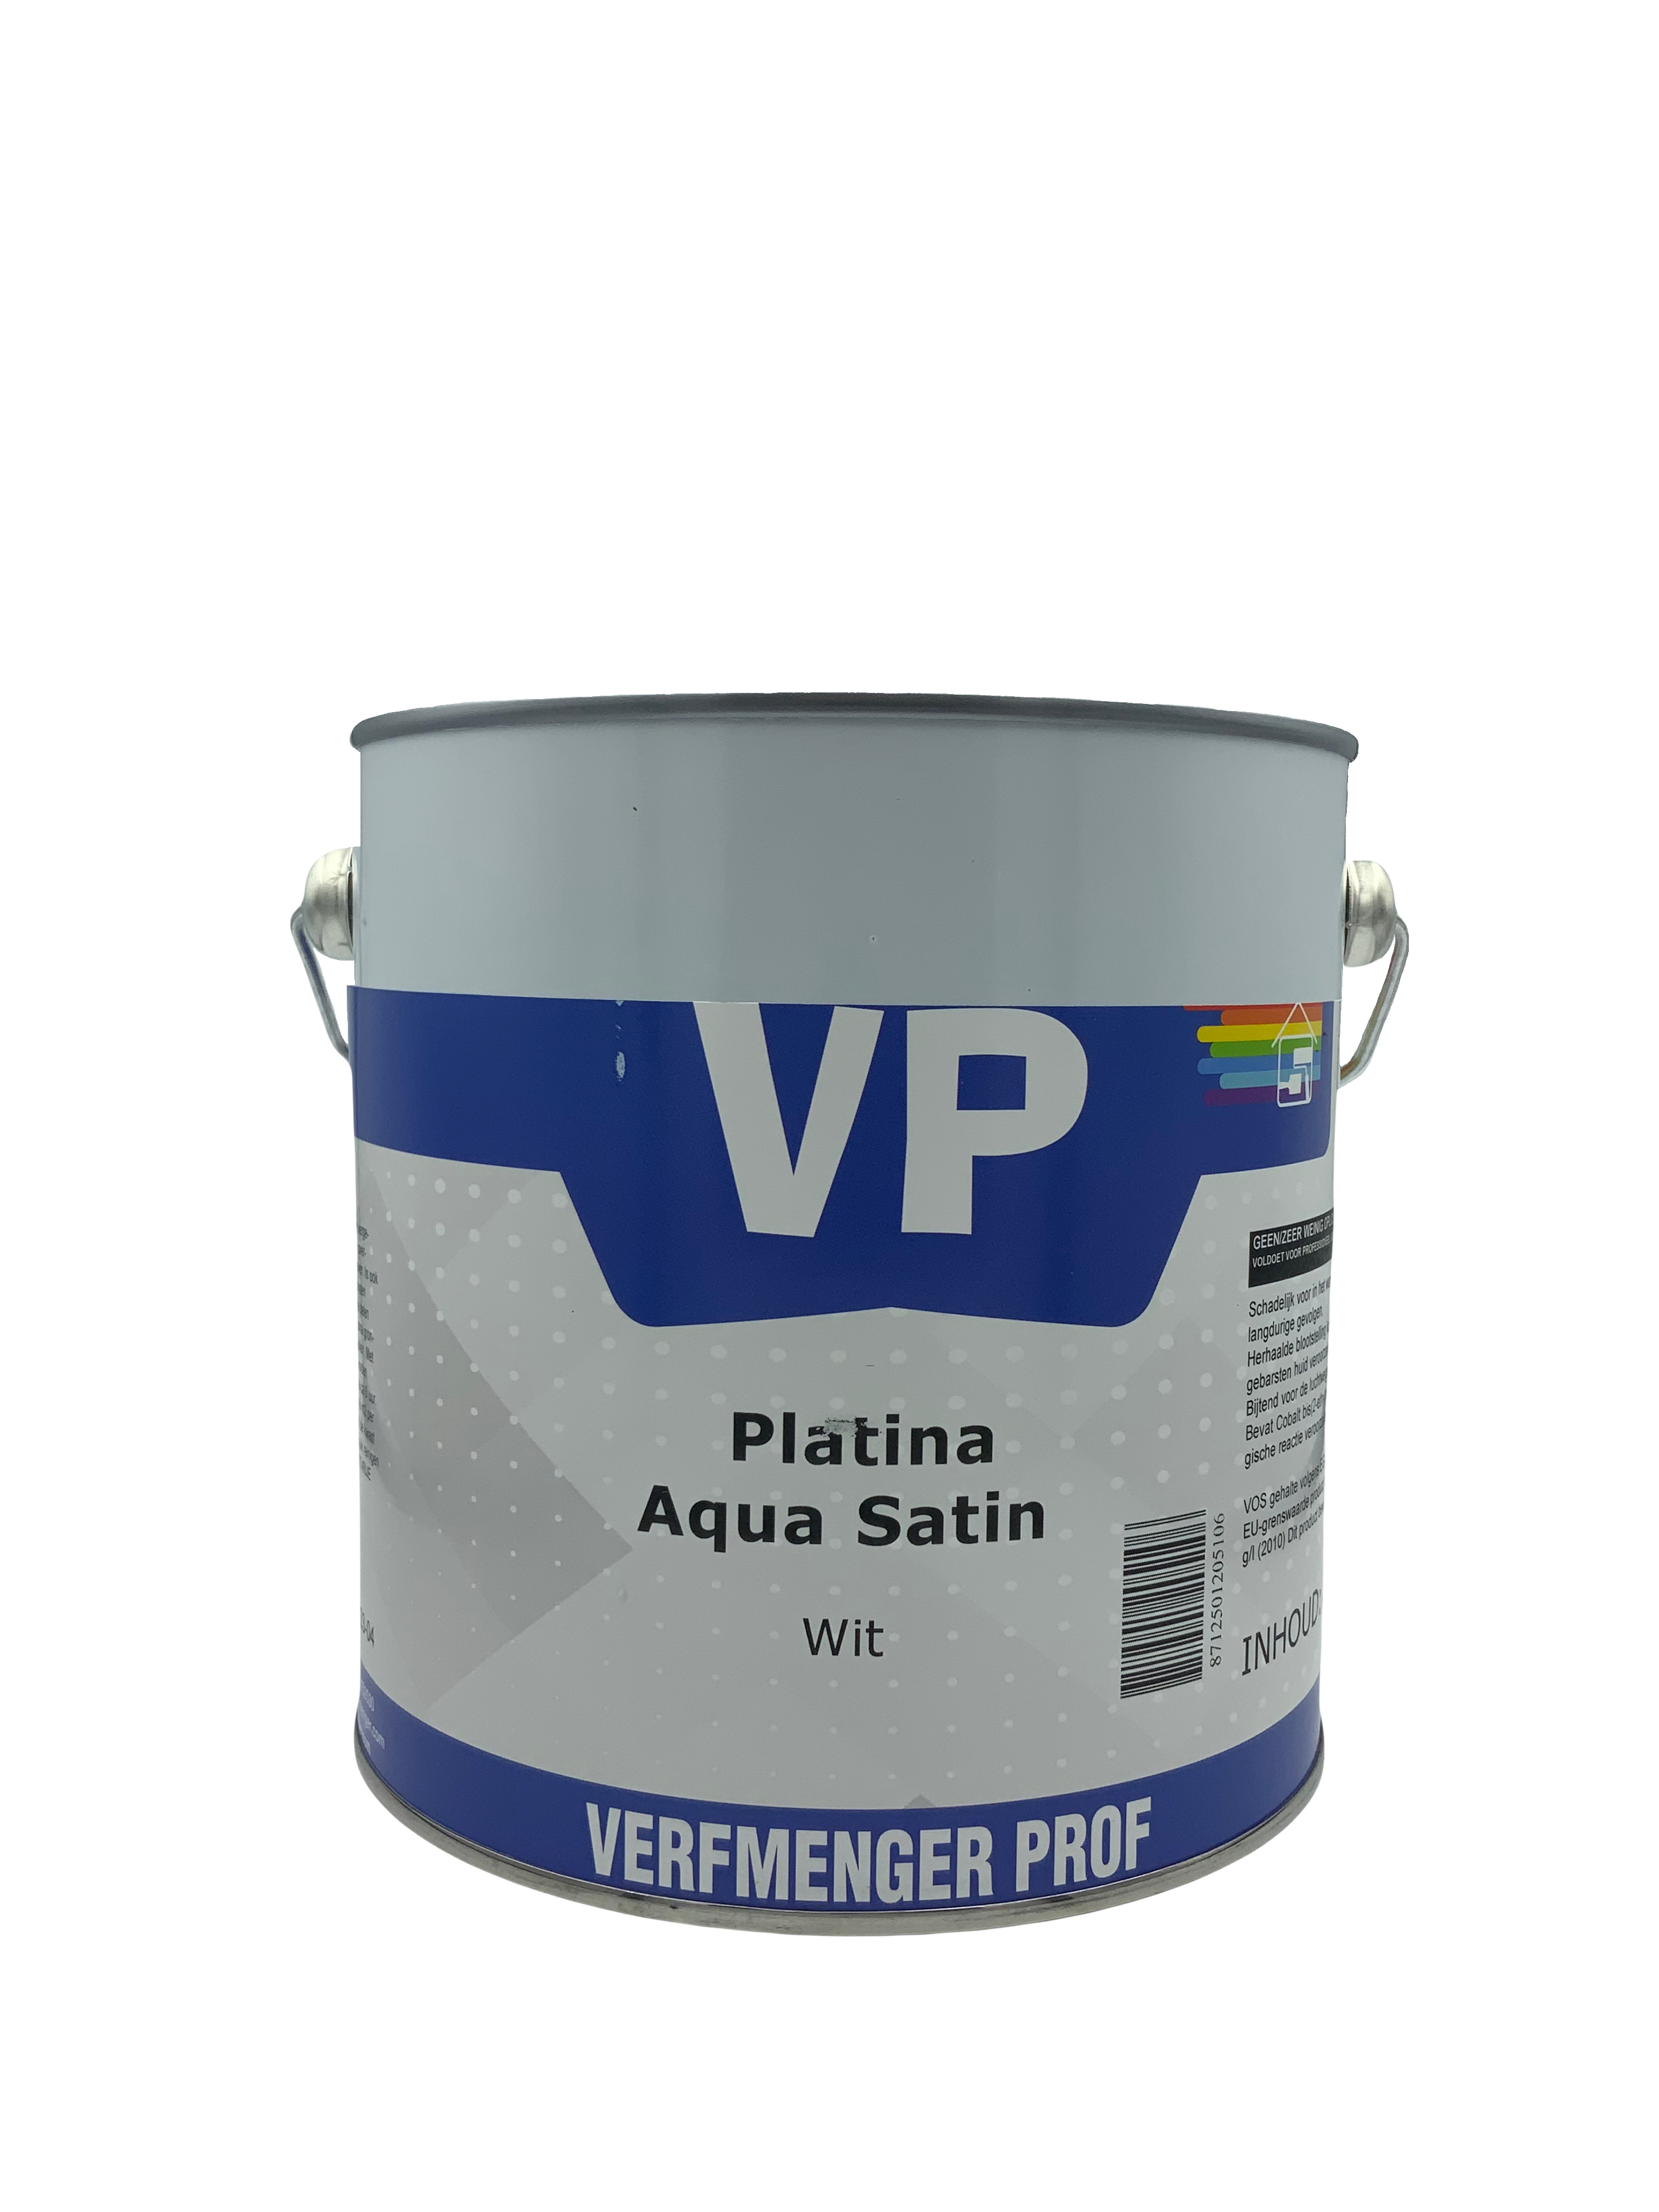 VP Platina Aqua Satin